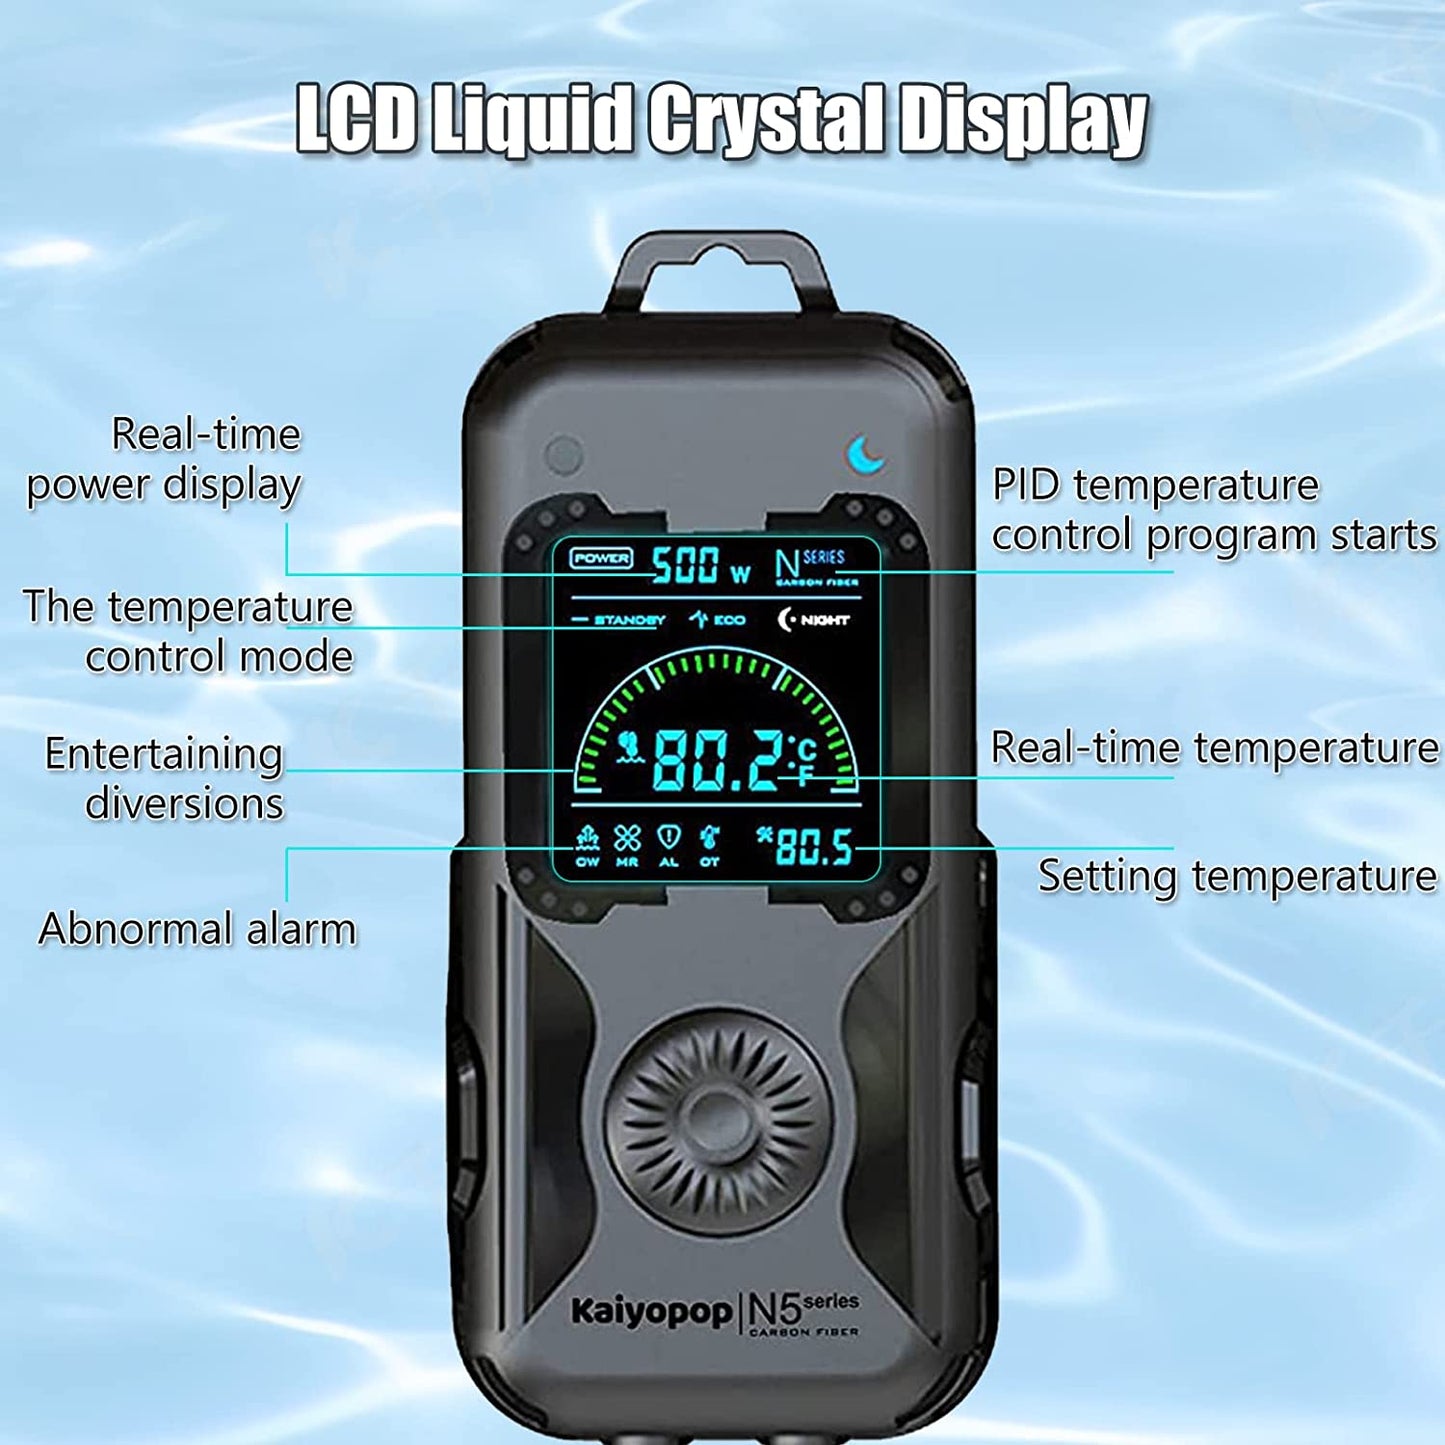 LCD Liquid Crystal Display